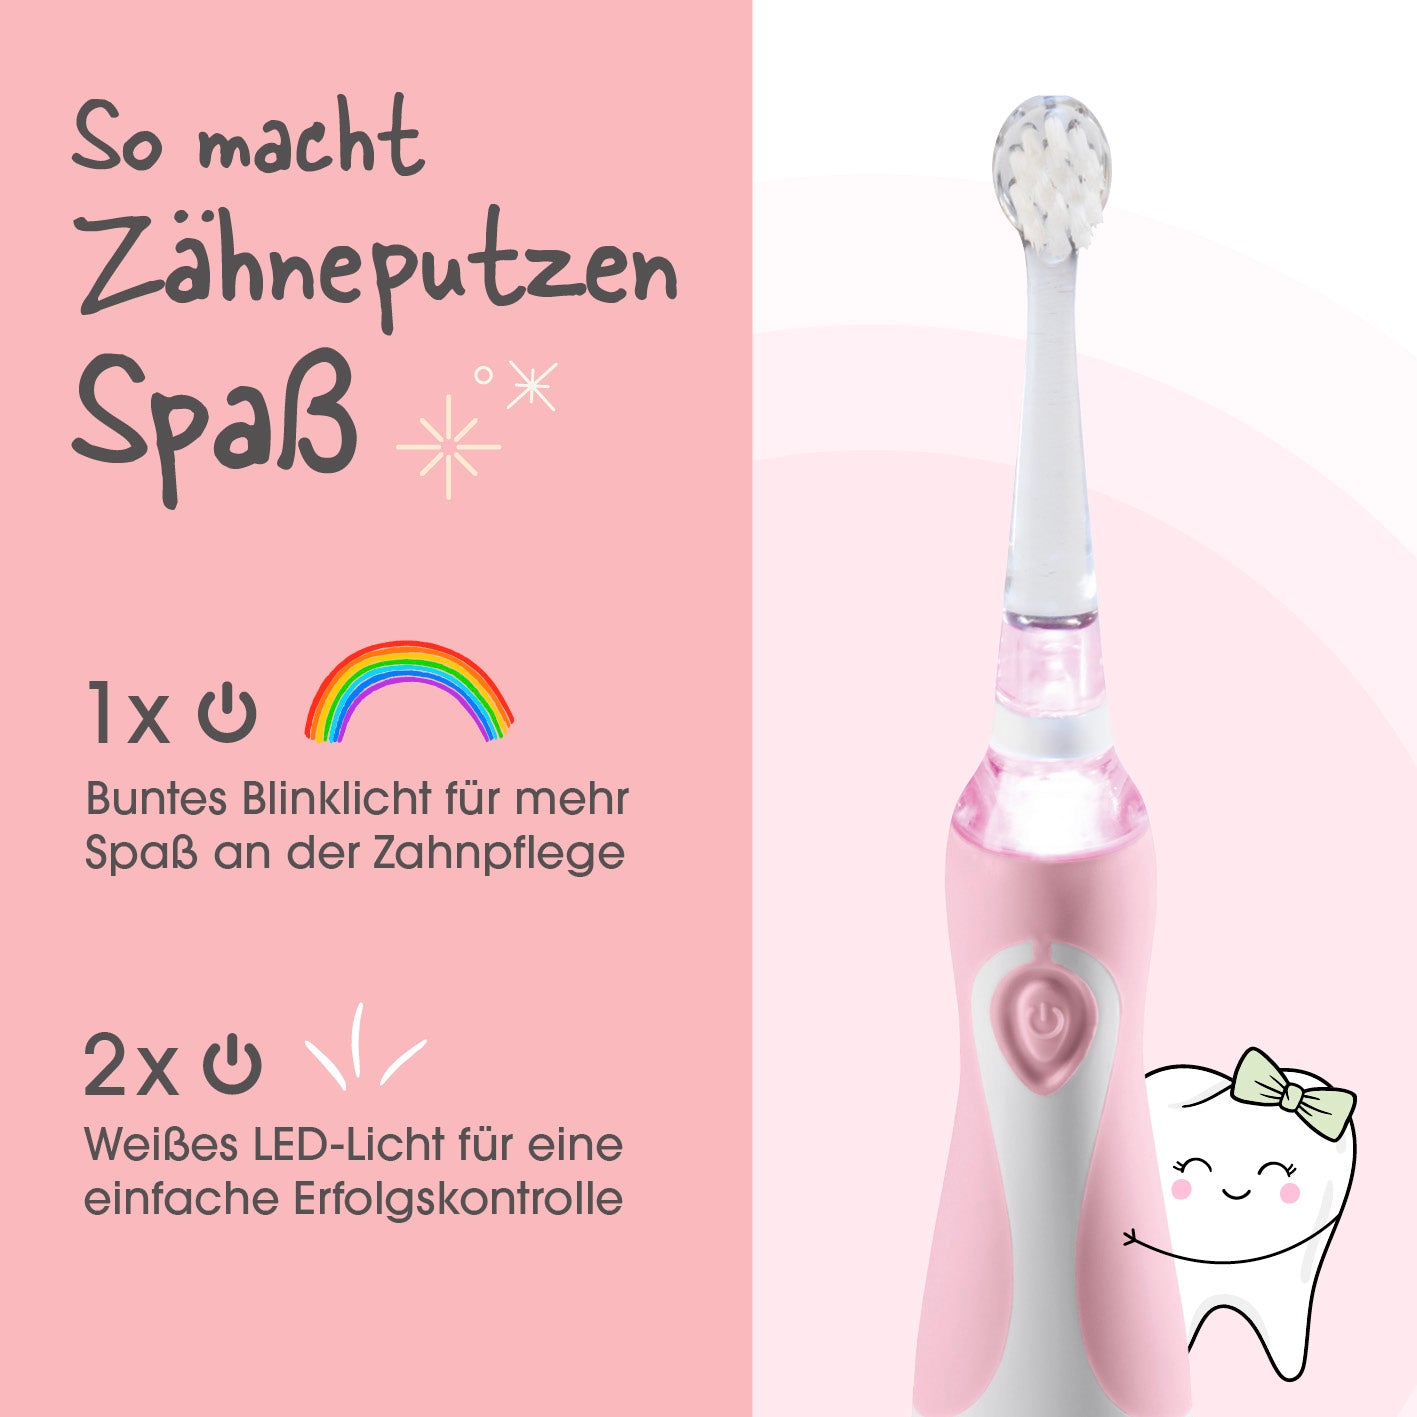 Elektrische Kinder-Zahnbürste mit Smart Timer - Ab 6 Monate* - Rosa/Weiß